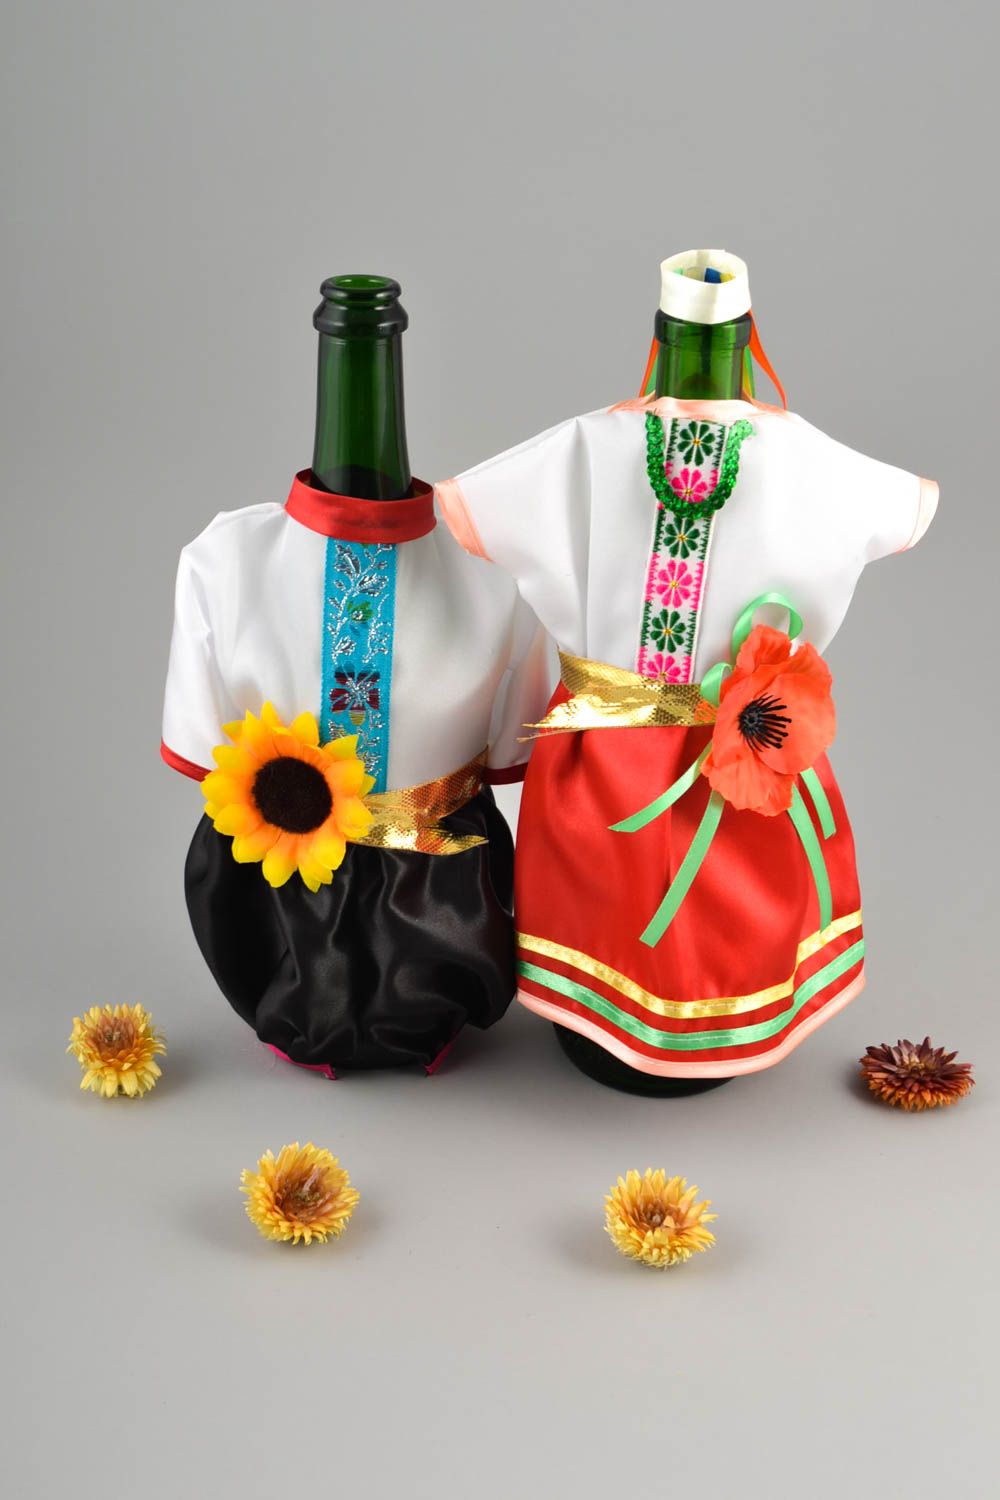 Ooriginelle Geschenke handmade Flaschen Deko kreative Deko Ideen ethnisch schön foto 1